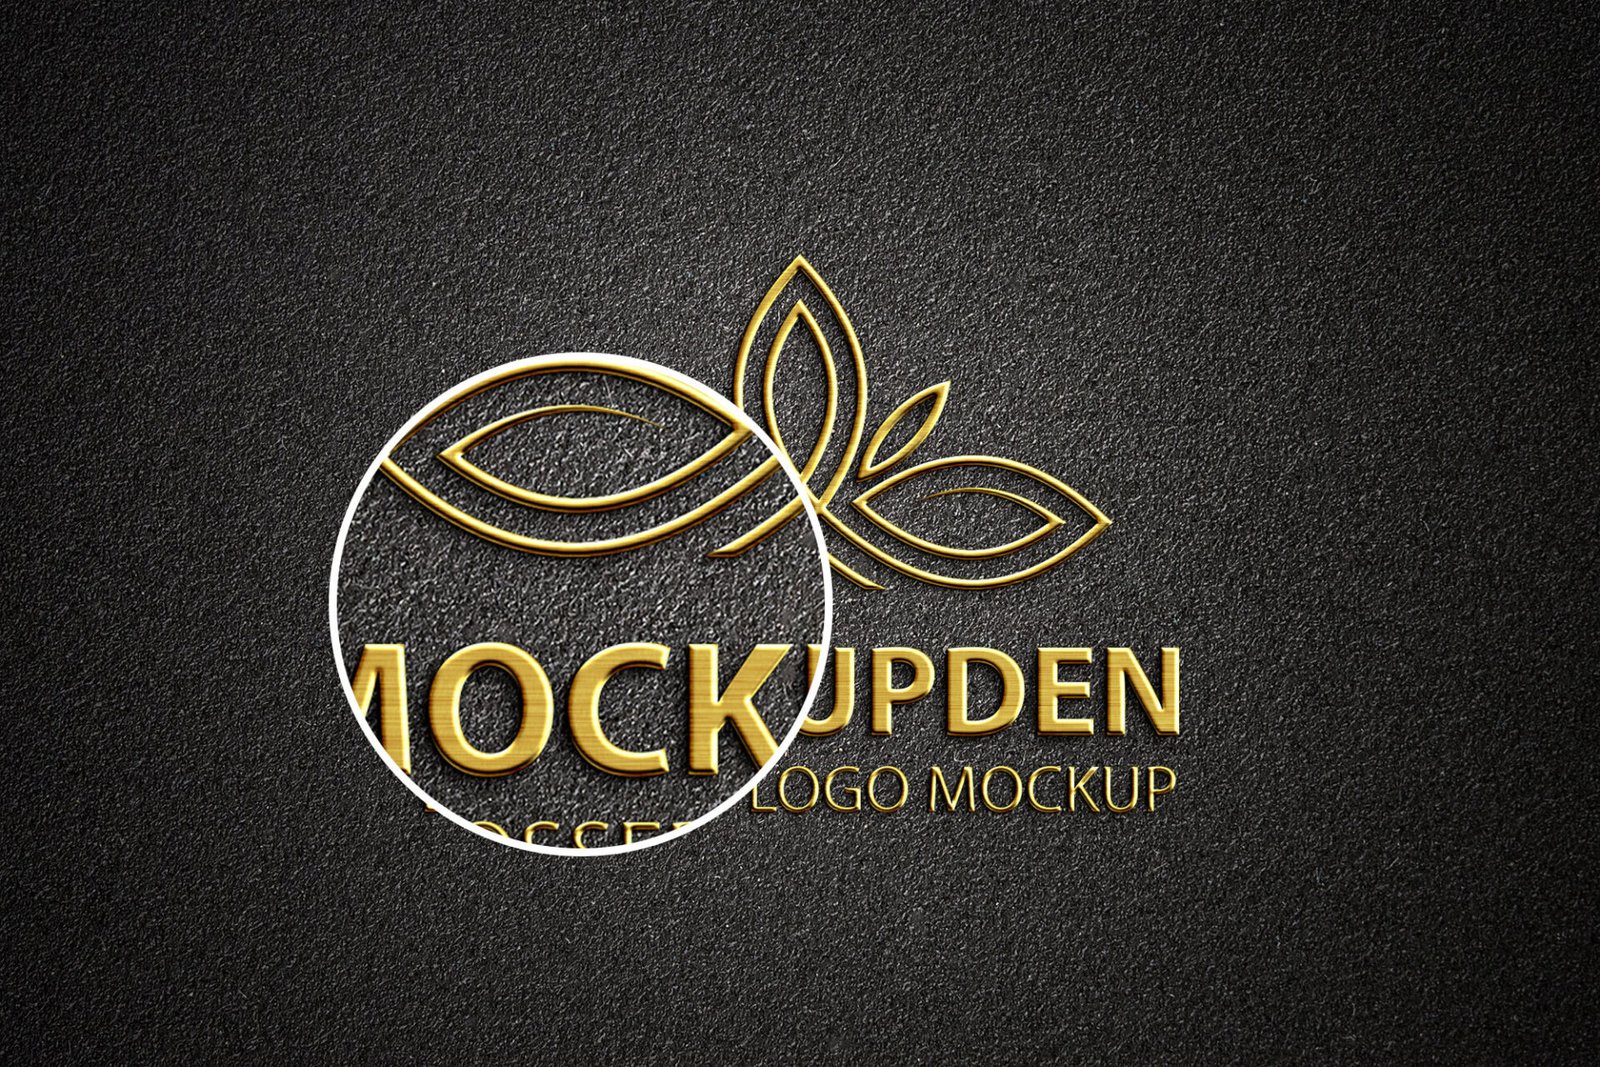 Logo psd free mockup Idea